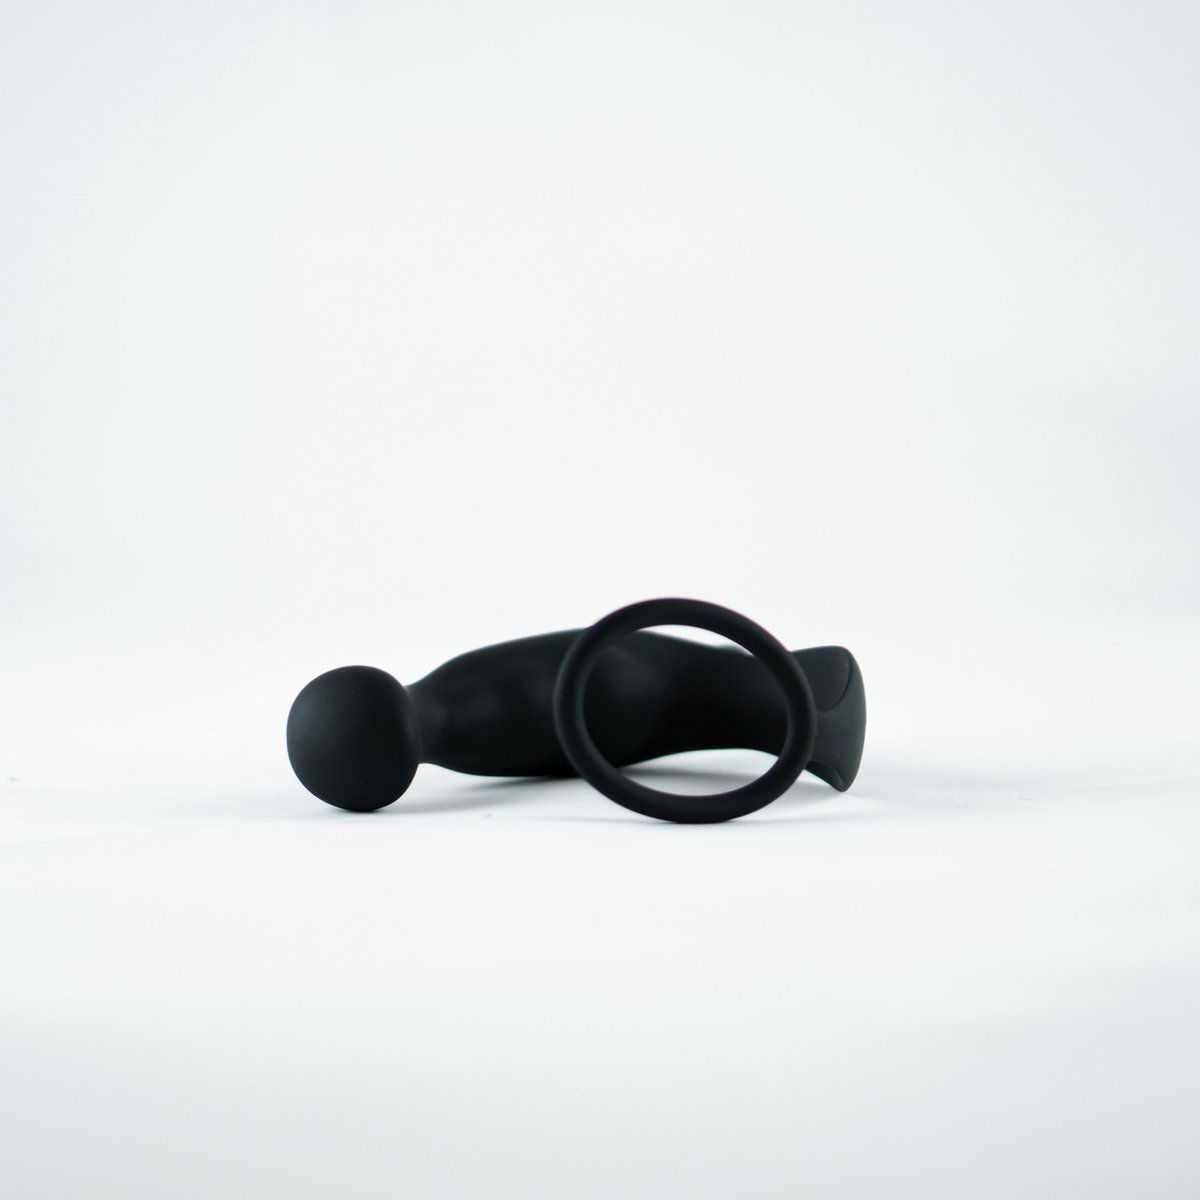 SEVEX - Prostaat Vibrator - Sex Toys - 10 Vibratie Standen - Buttplug - Seksspeeltje voor Mannen - Stimulator - Anaal Dildo - Waterdicht - Cadeau voor Man - Met Glijmiddel Waterbasis